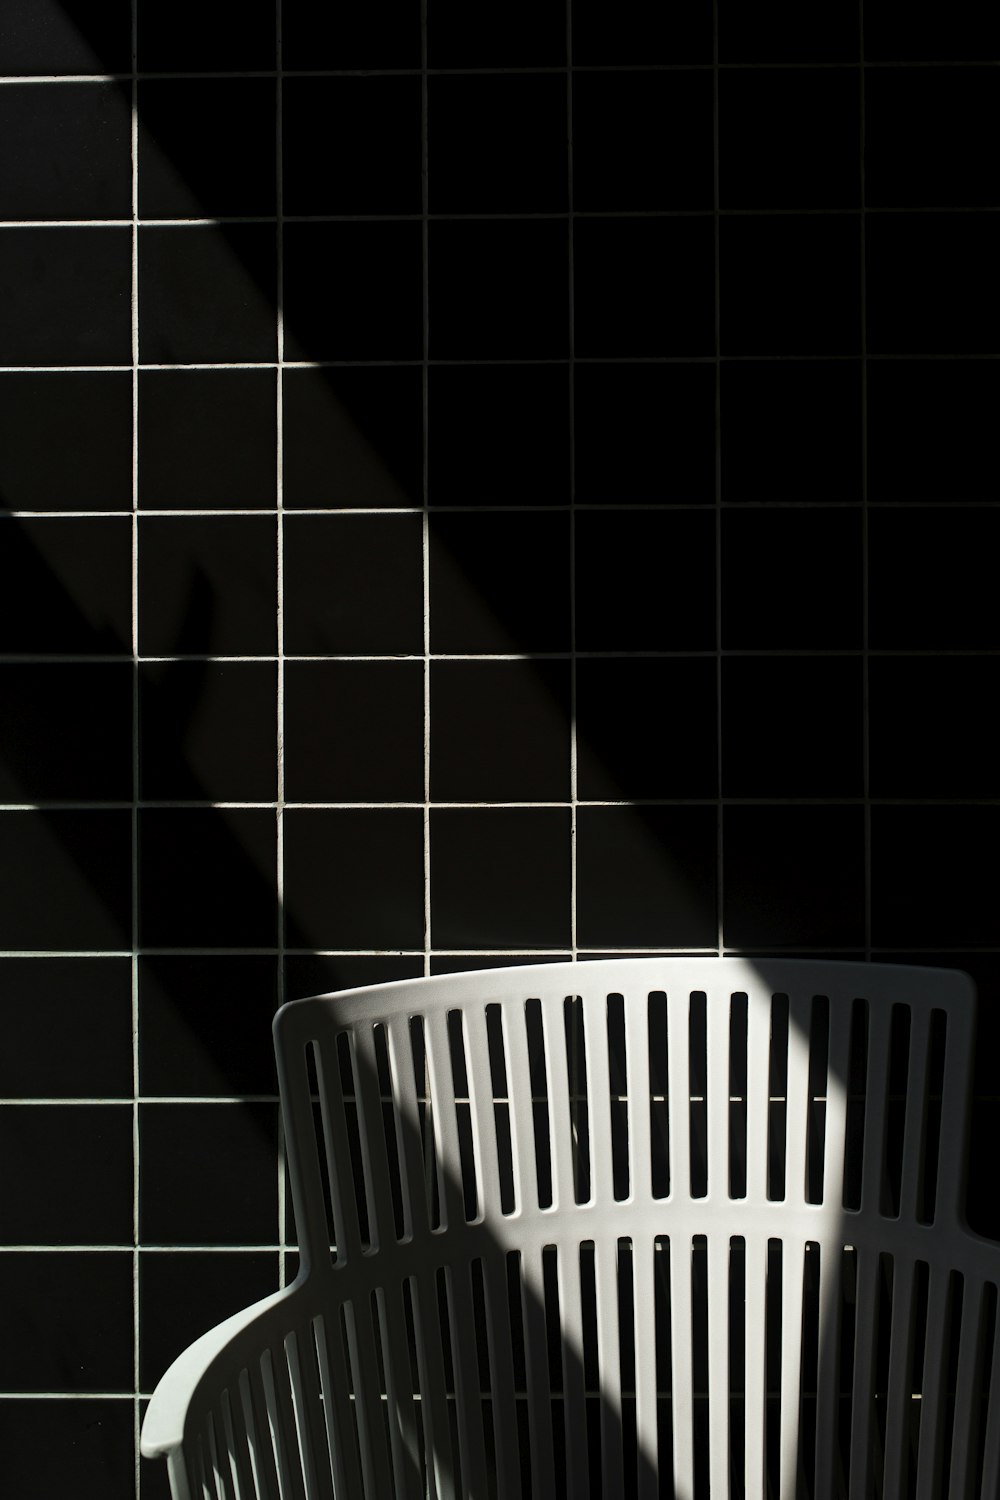 white plastic laundry basket on black floor tiles